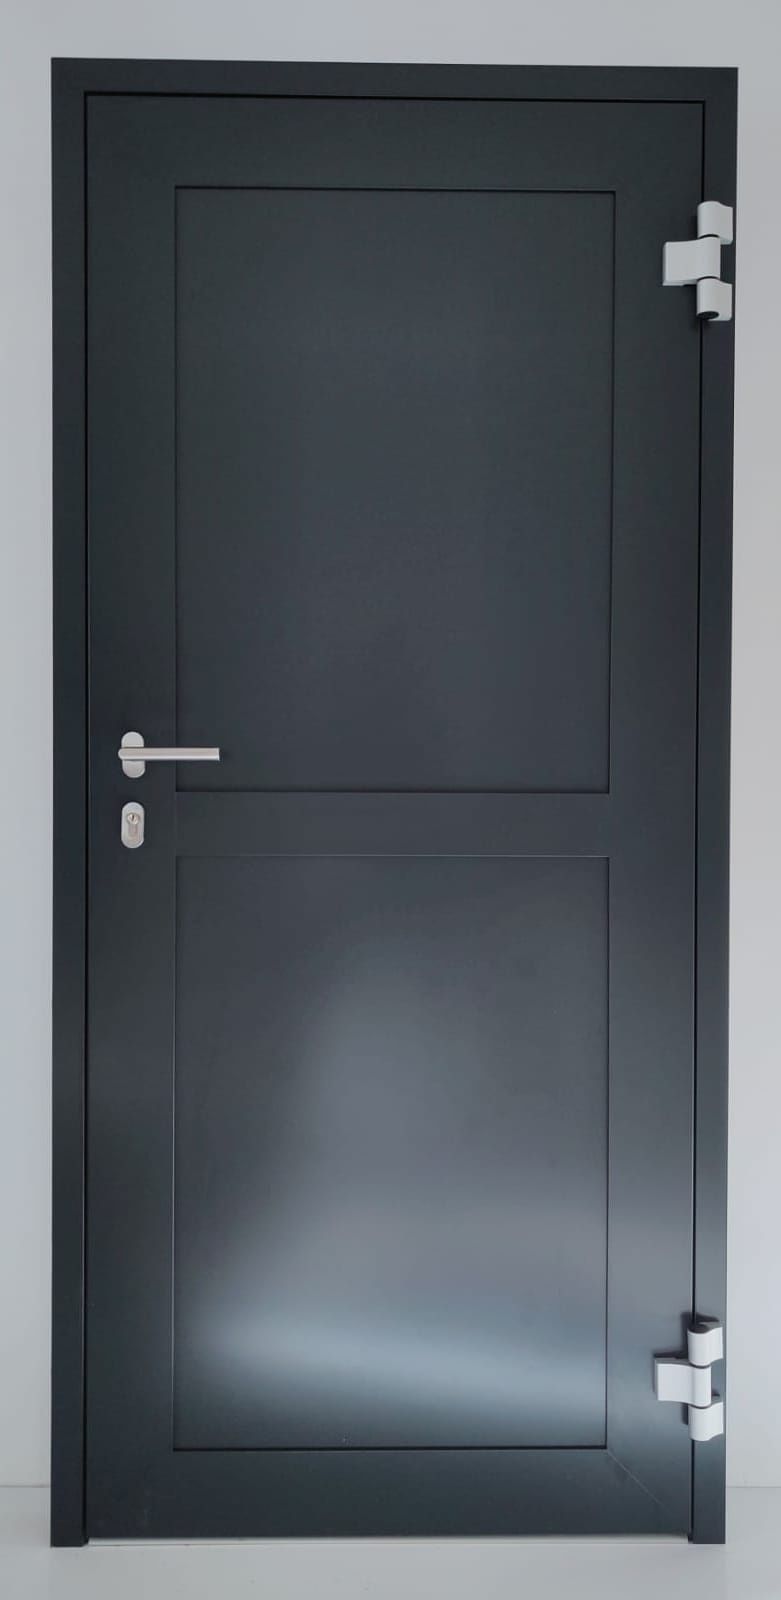 Drzwi aluminiowe zewnętrzne ciepłe masywne